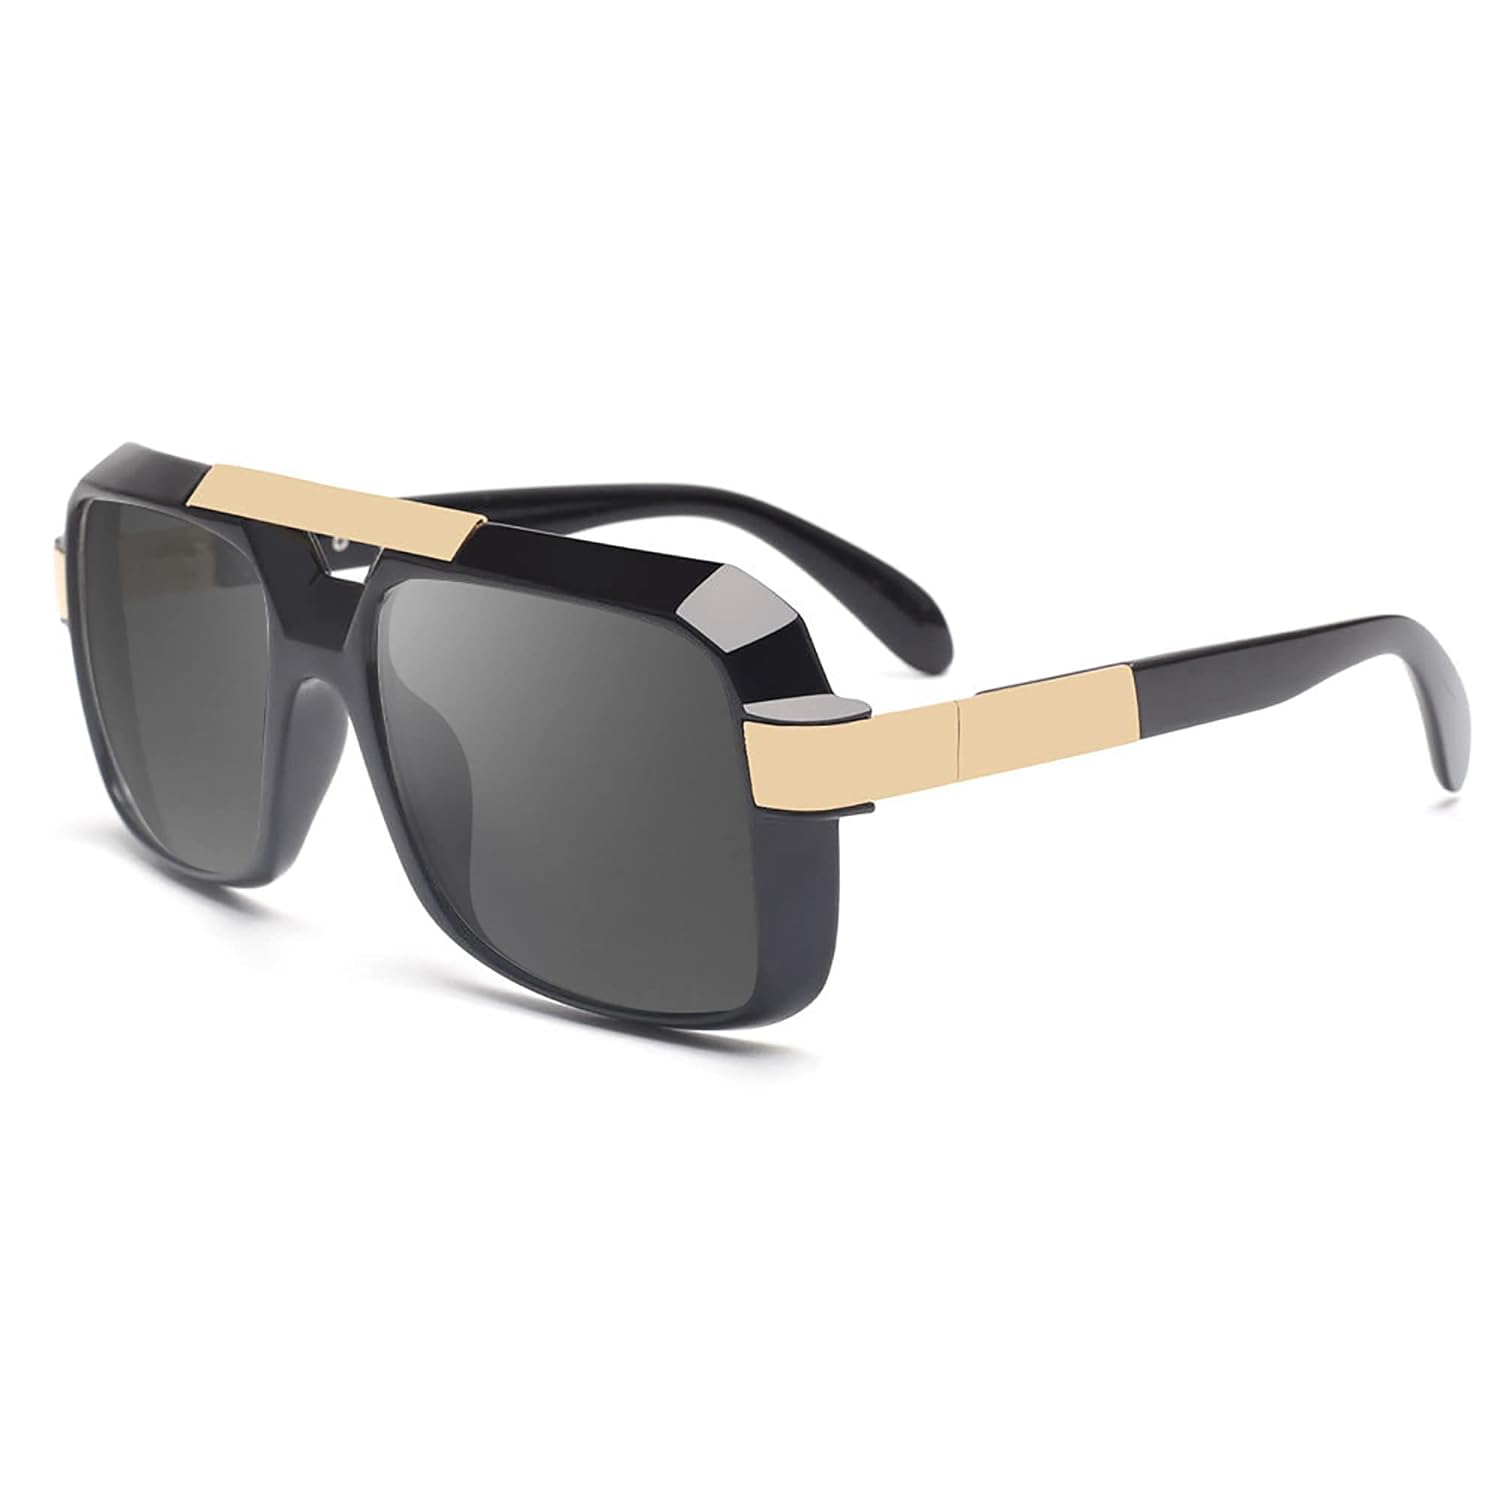 JIM HALO Polarized Sunglasses Men Women Retro Flat Top Square Driving Glasses